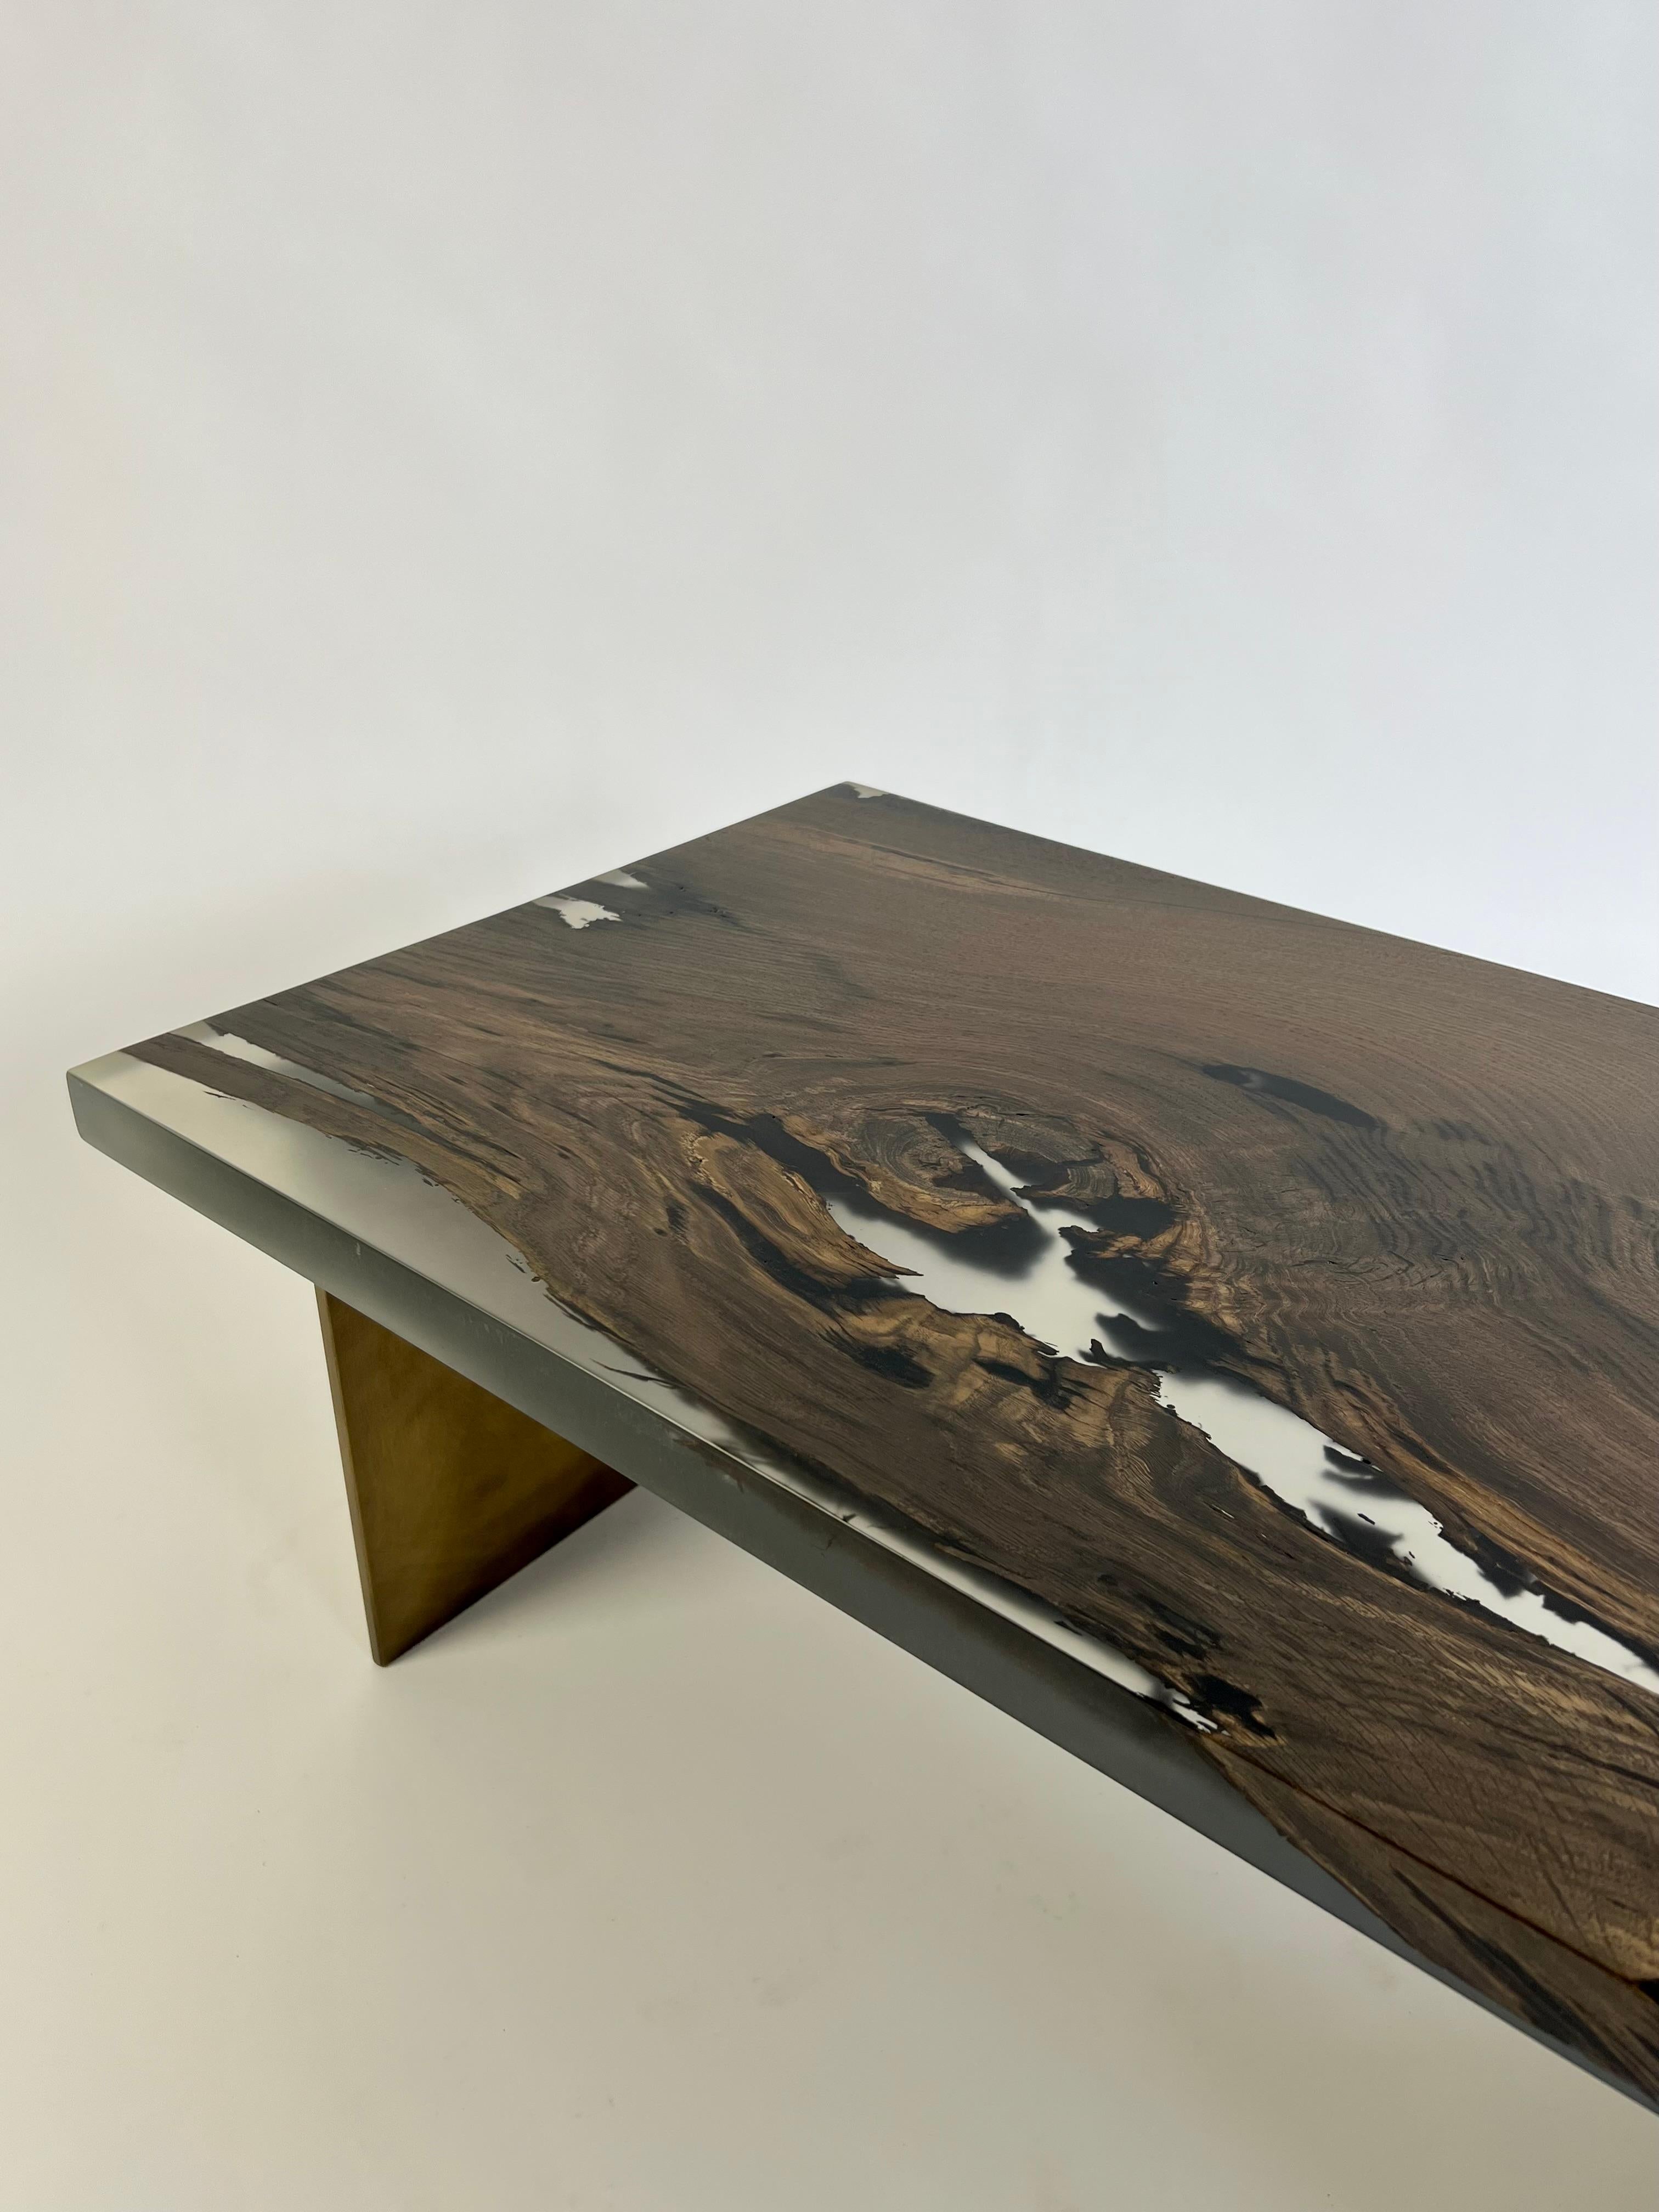 Il s'agit d'une table basse unique fabriquée à partir de chêne de tourbière et de résine époxy. Le bois lui-même a un âge stupéfiant de 7 000 ans. Il provient de Roumanie et est resté enfoui sous terre pendant des millénaires. Sa conservation